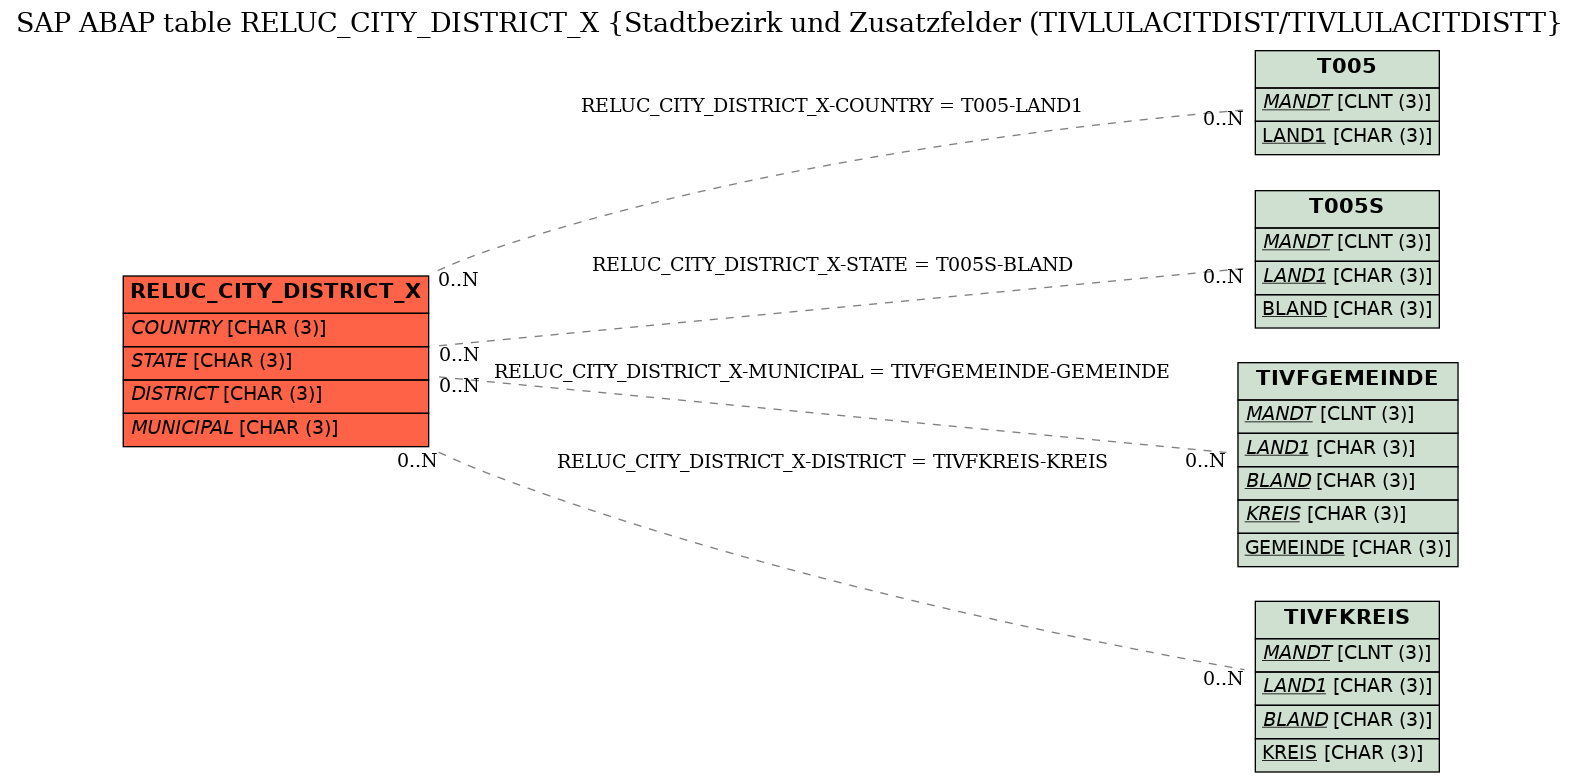 E-R Diagram for table RELUC_CITY_DISTRICT_X (Stadtbezirk und Zusatzfelder (TIVLULACITDIST/TIVLULACITDISTT)